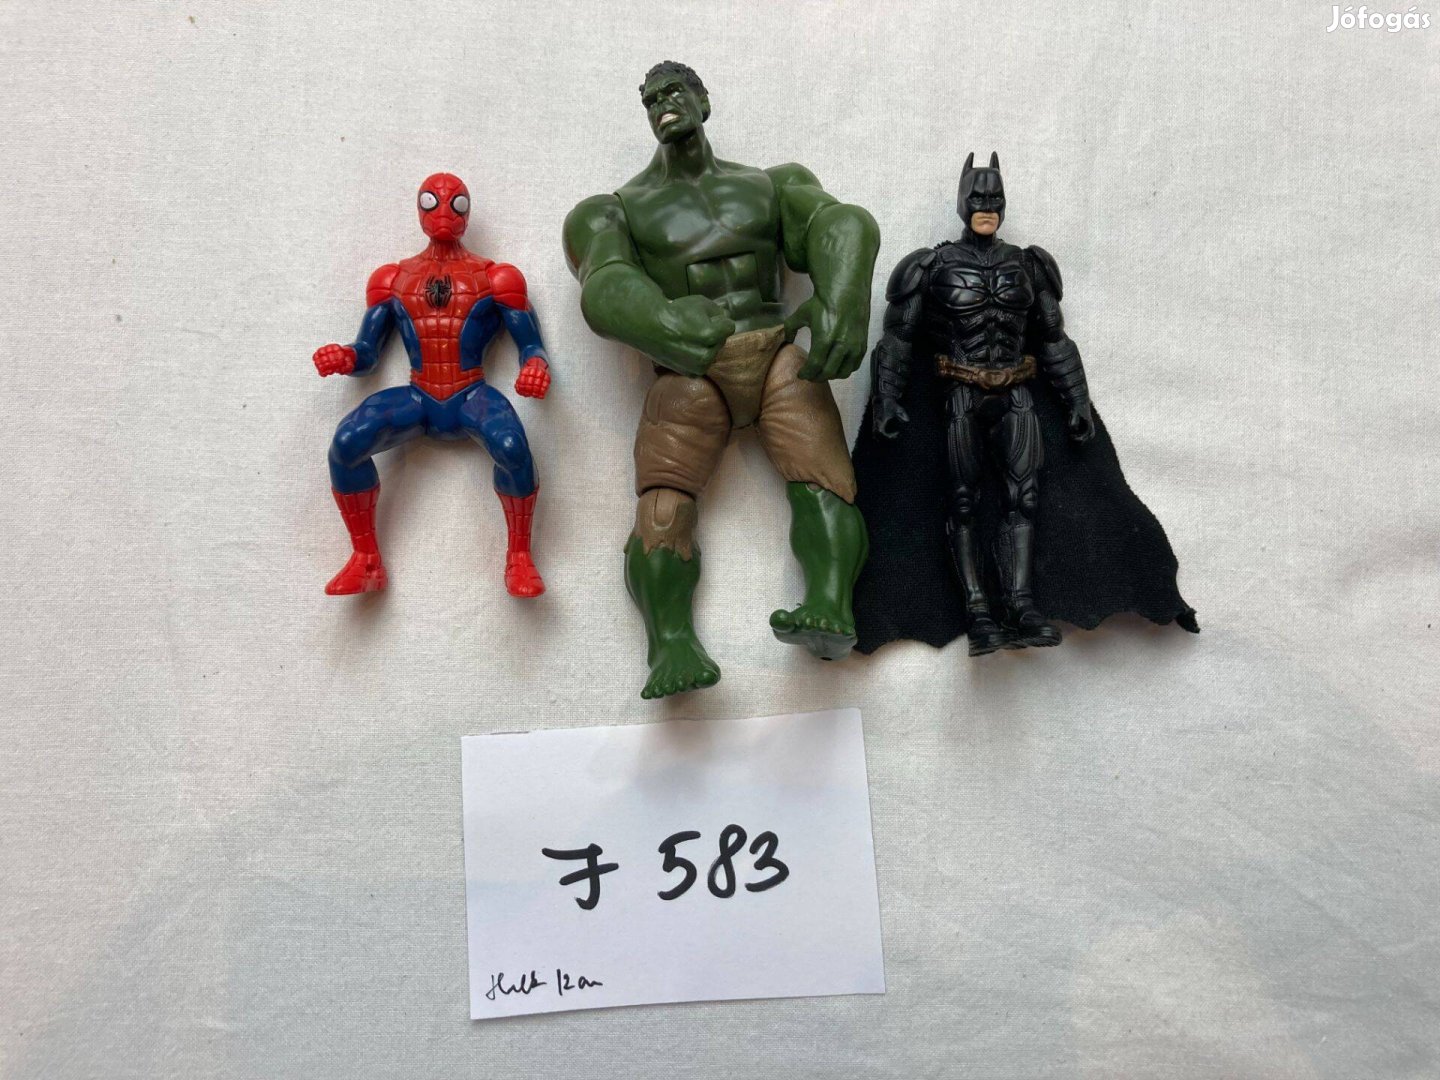 Szuperhős figura csomag, Hulk, Batman J583